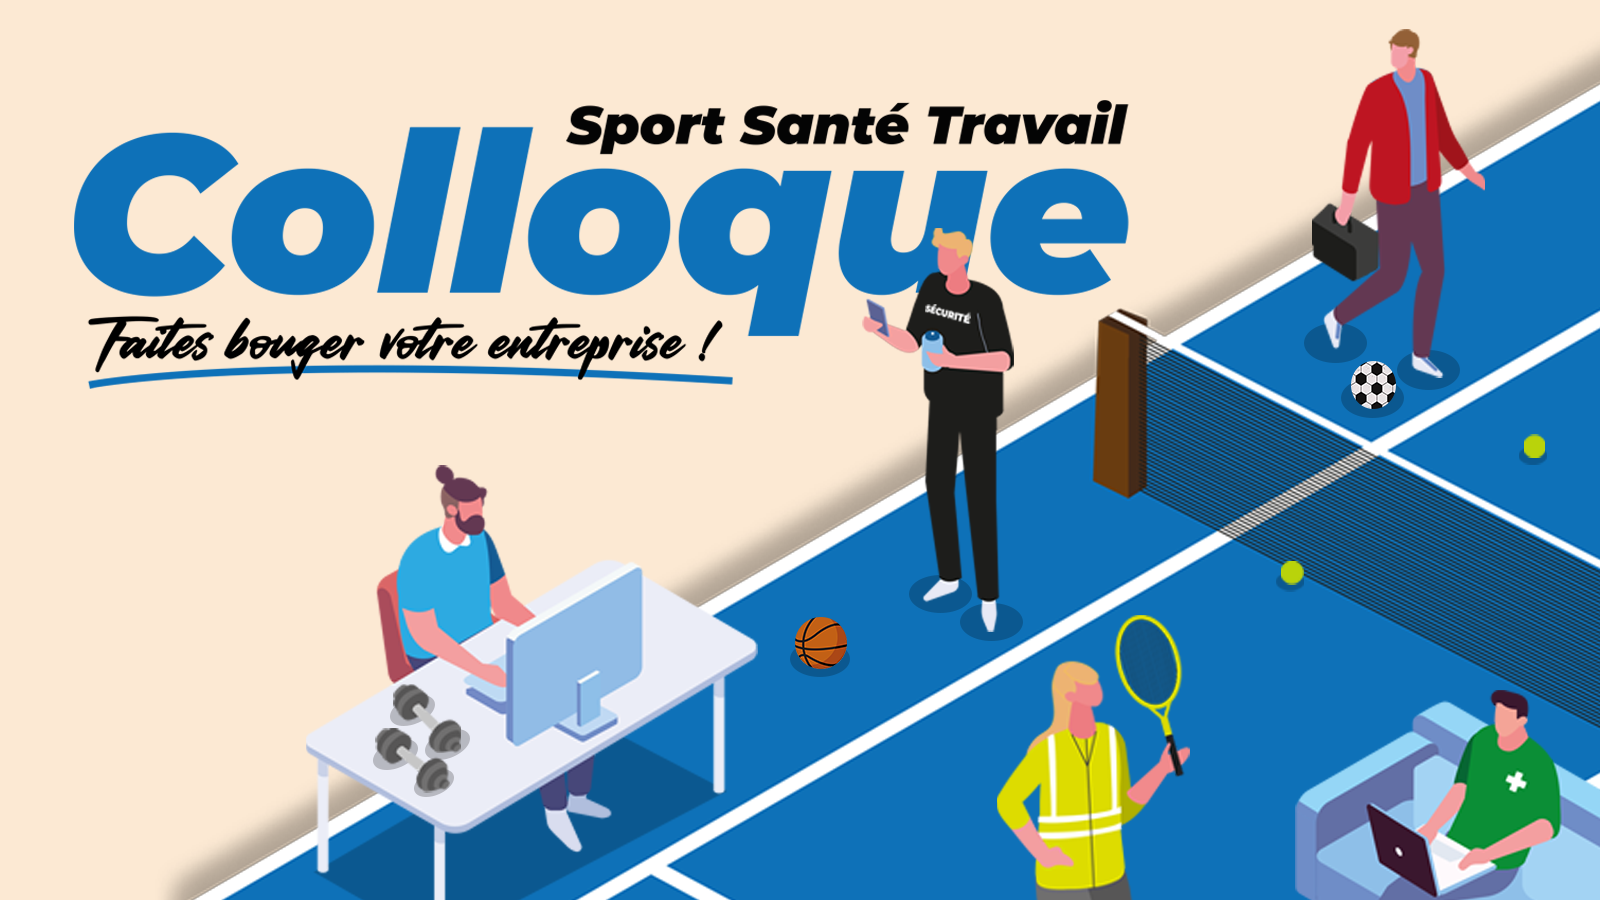 18 juin à Tomblaine - Colloque « Sport Santé Travail : faites bouger votre entreprise ! »